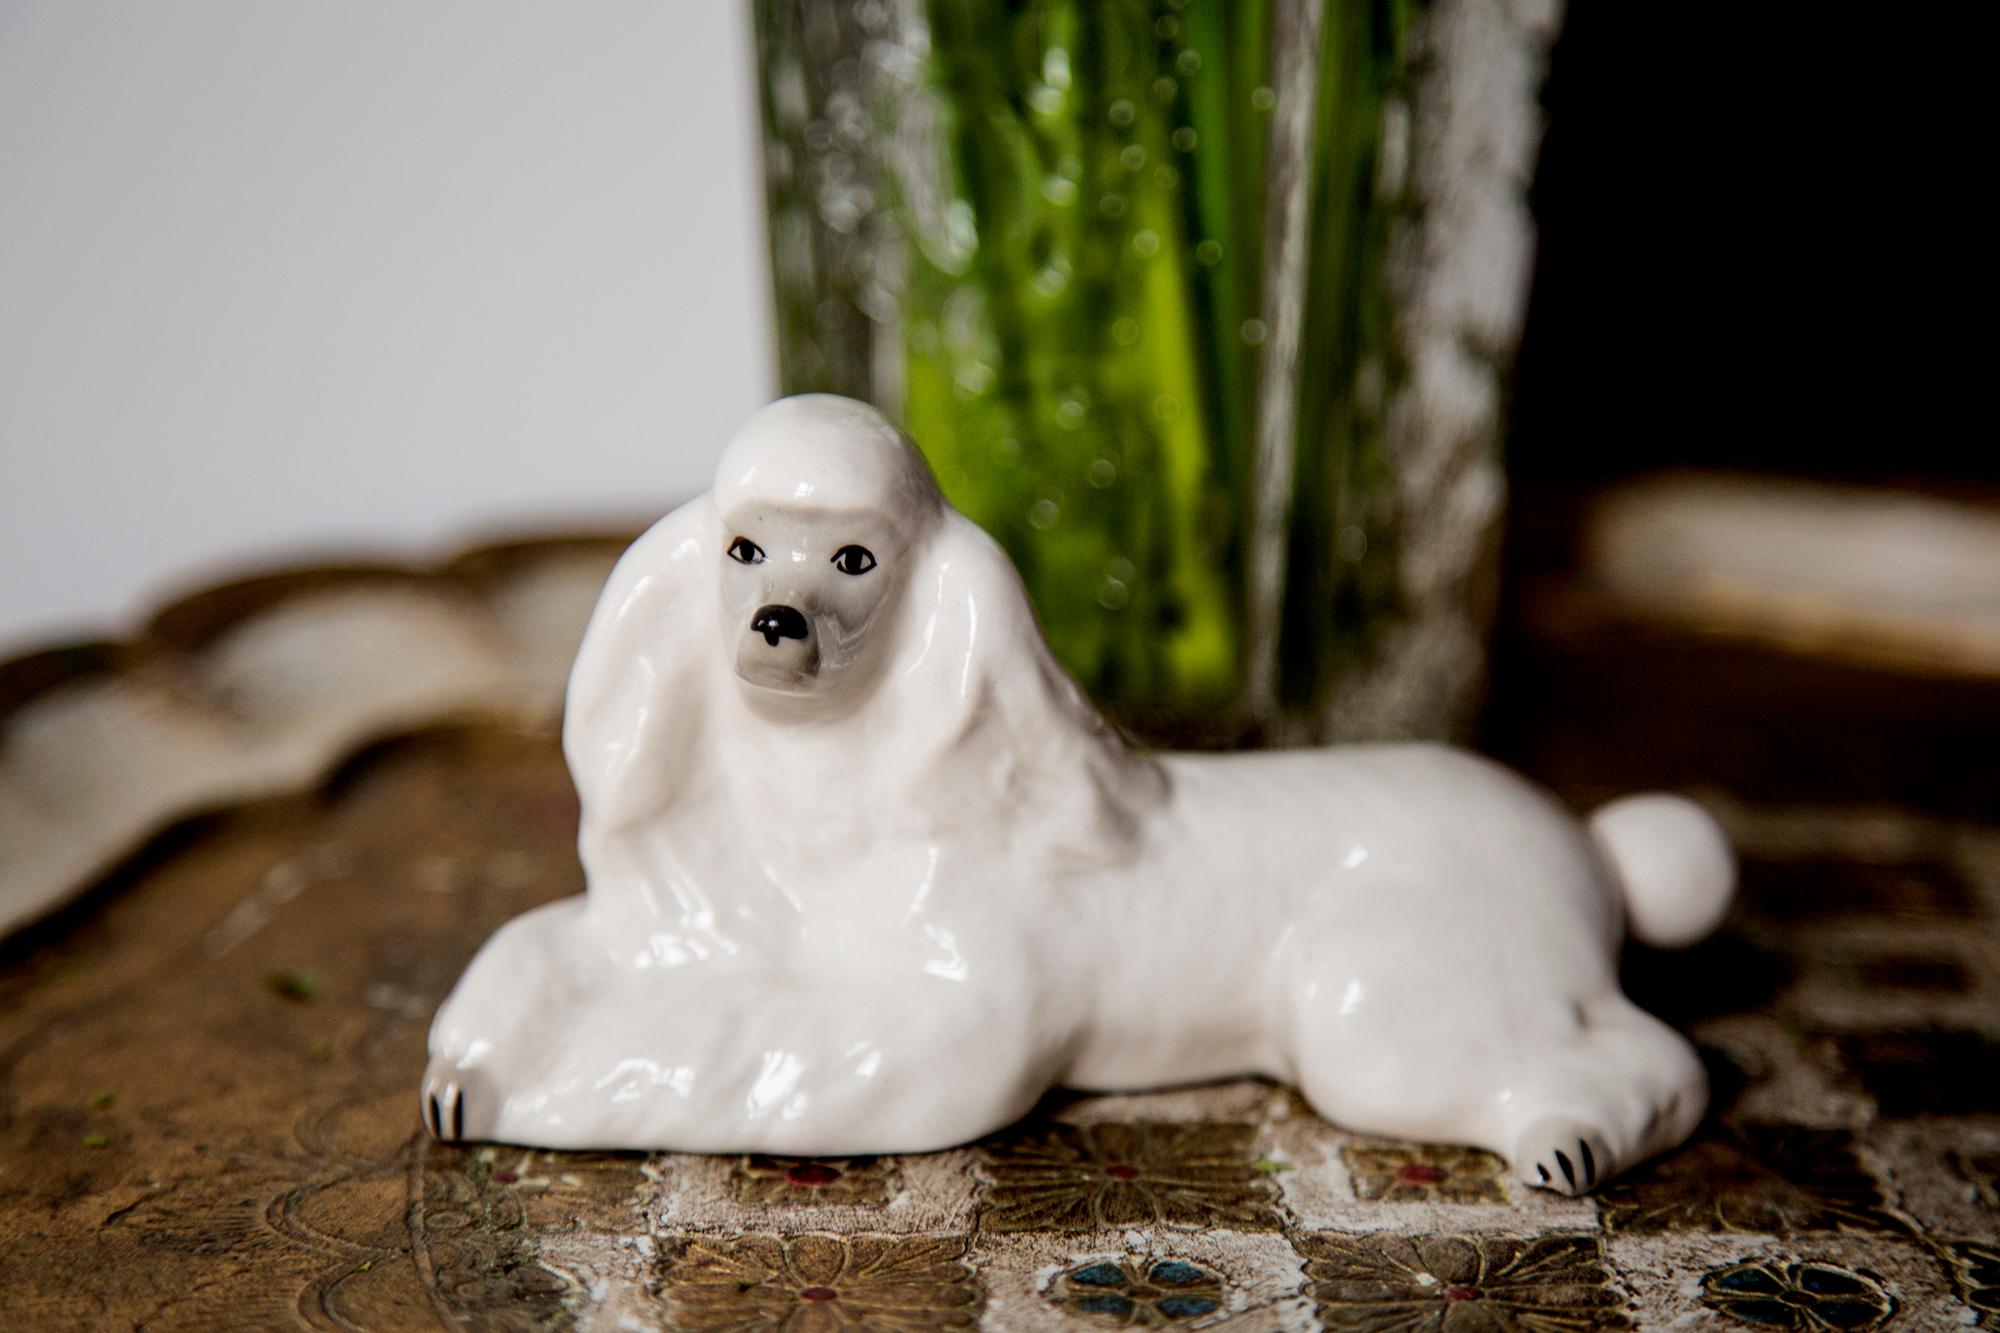 Céramique peinte, très bon état d'origine vintage. Pas de dommages ni de fissures. Belle et unique sculpture décorative. La sculpture de chien caniche blanc a été produite en Angleterre. Un seul chien disponible.